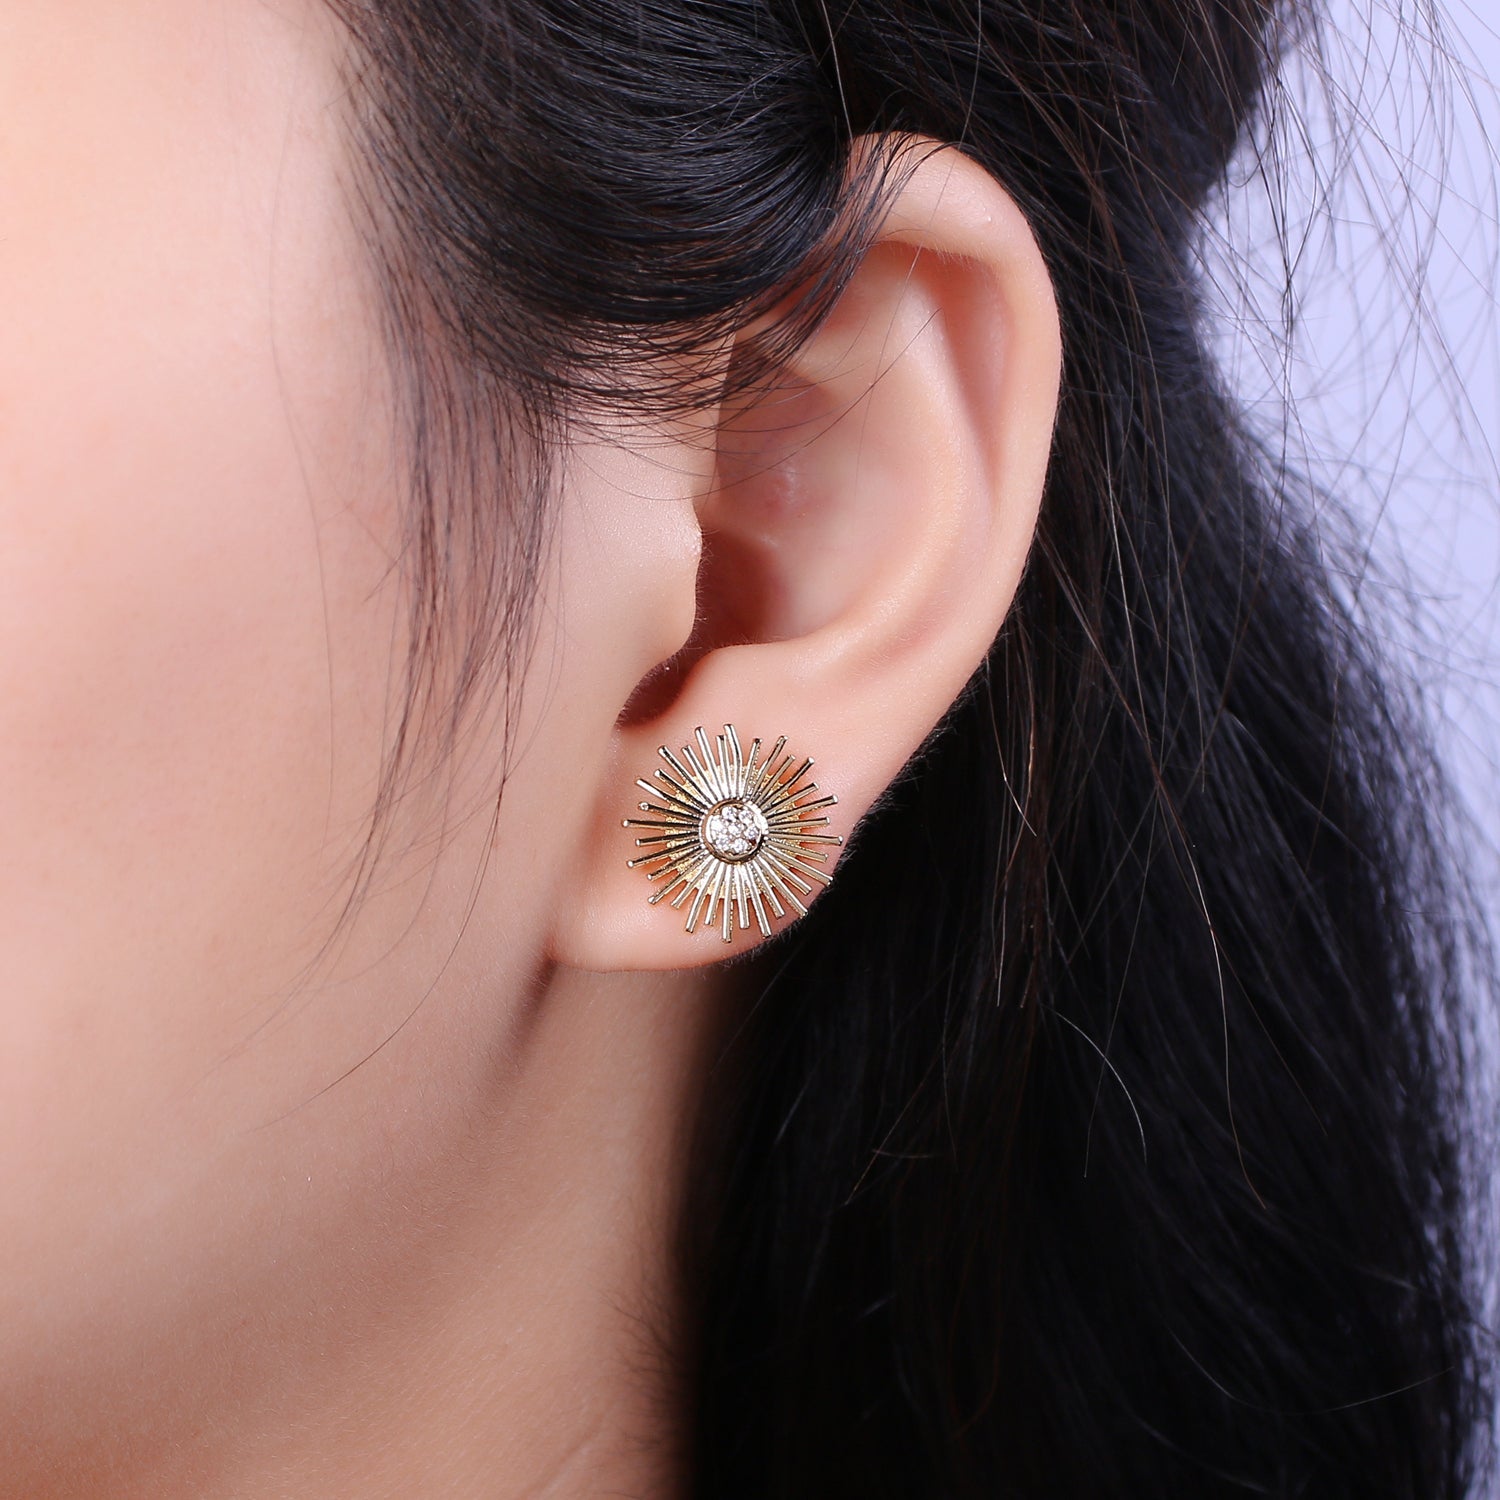 Dainty Sun earrings • sun stud earrings • gold sun earrings • gold stud earrings • Cz Everday earrings • small earrings - DLUXCA